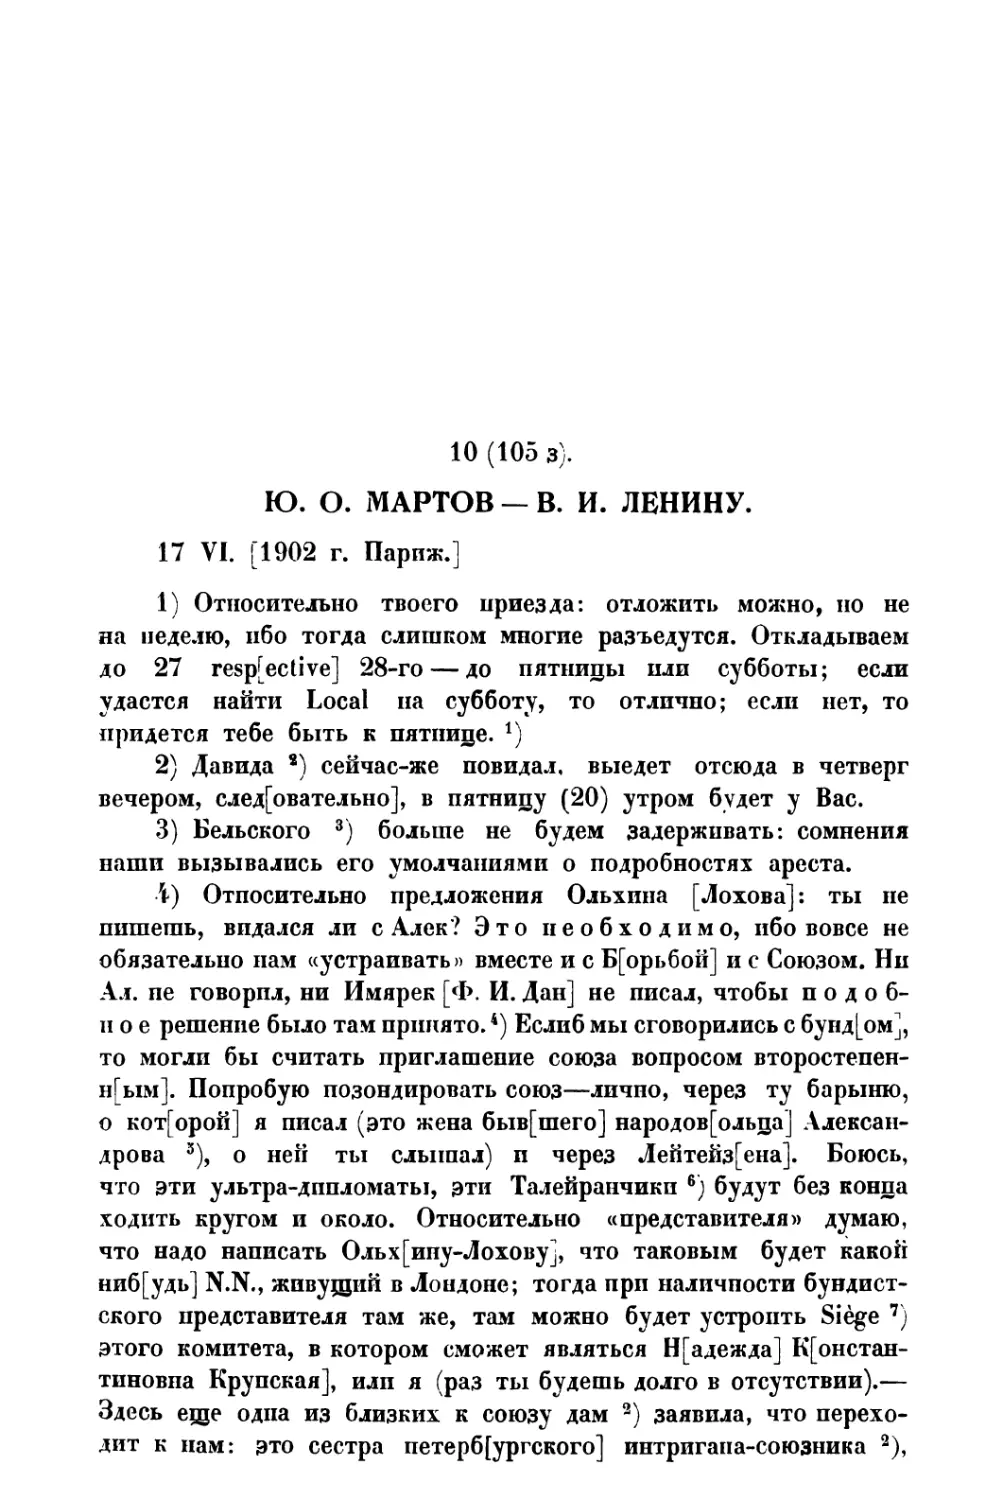 10. Ю. О. Мартов — В. И. Ленину от 17 VI 1902 г